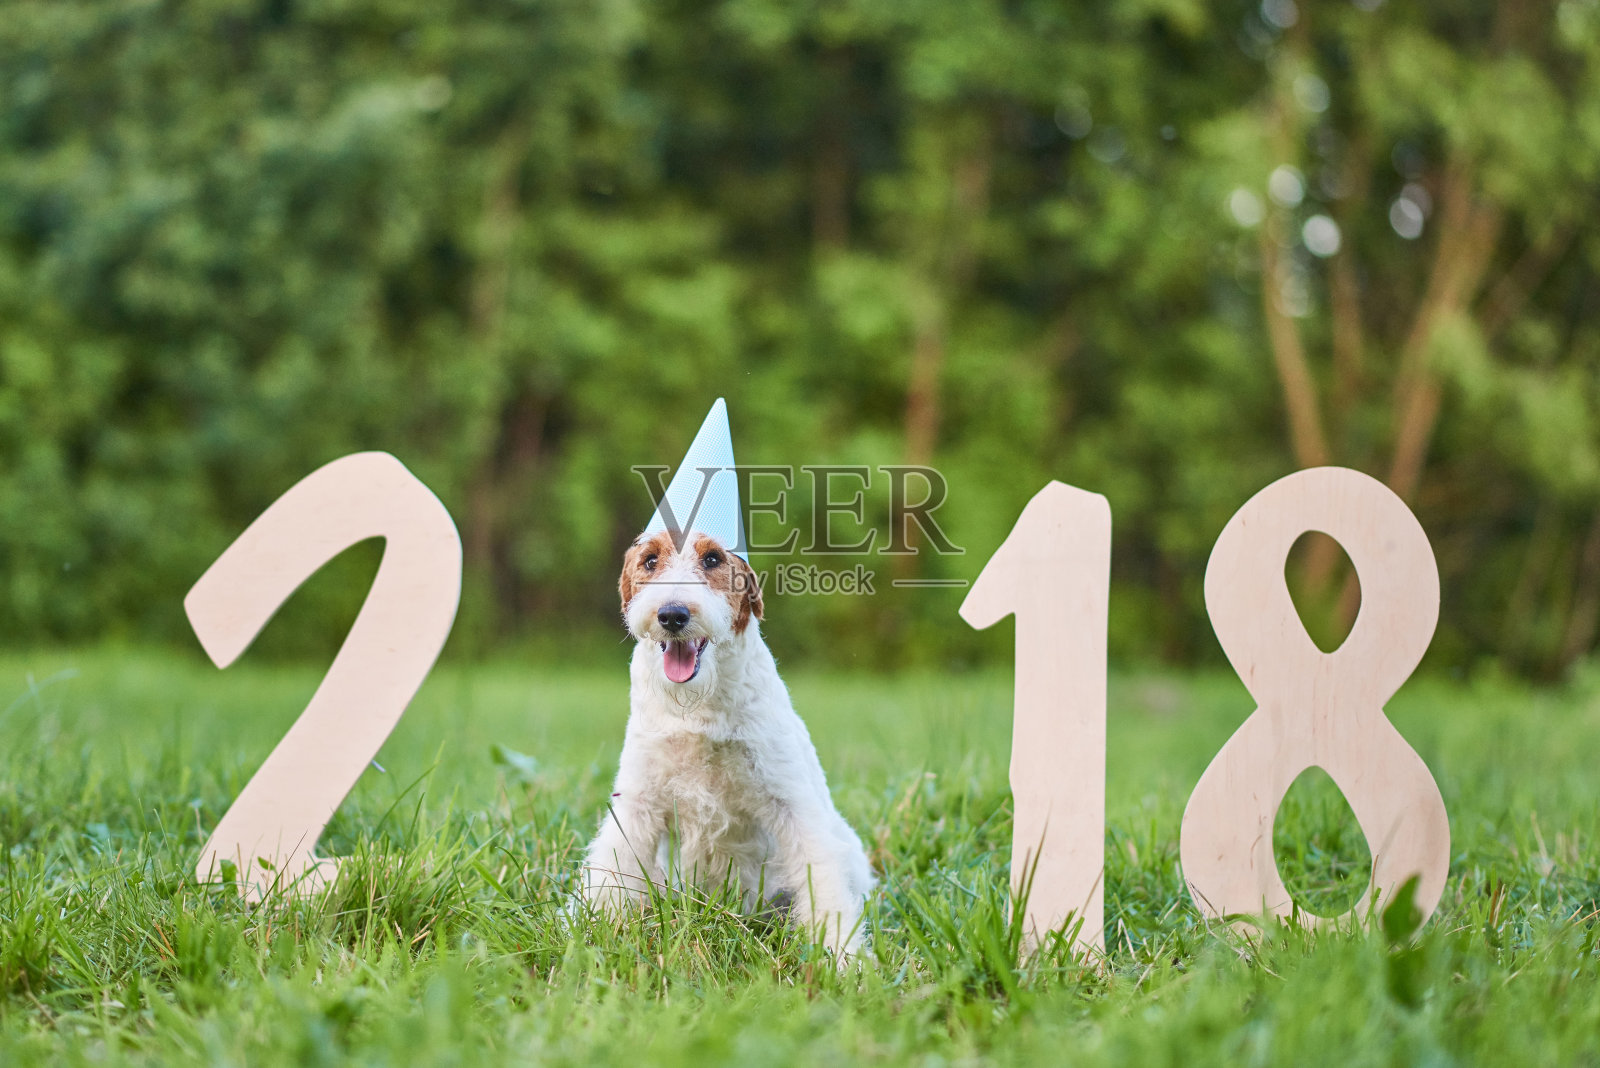 可爱的快乐狐狸梗犬在公园2018年新年贺词照片摄影图片